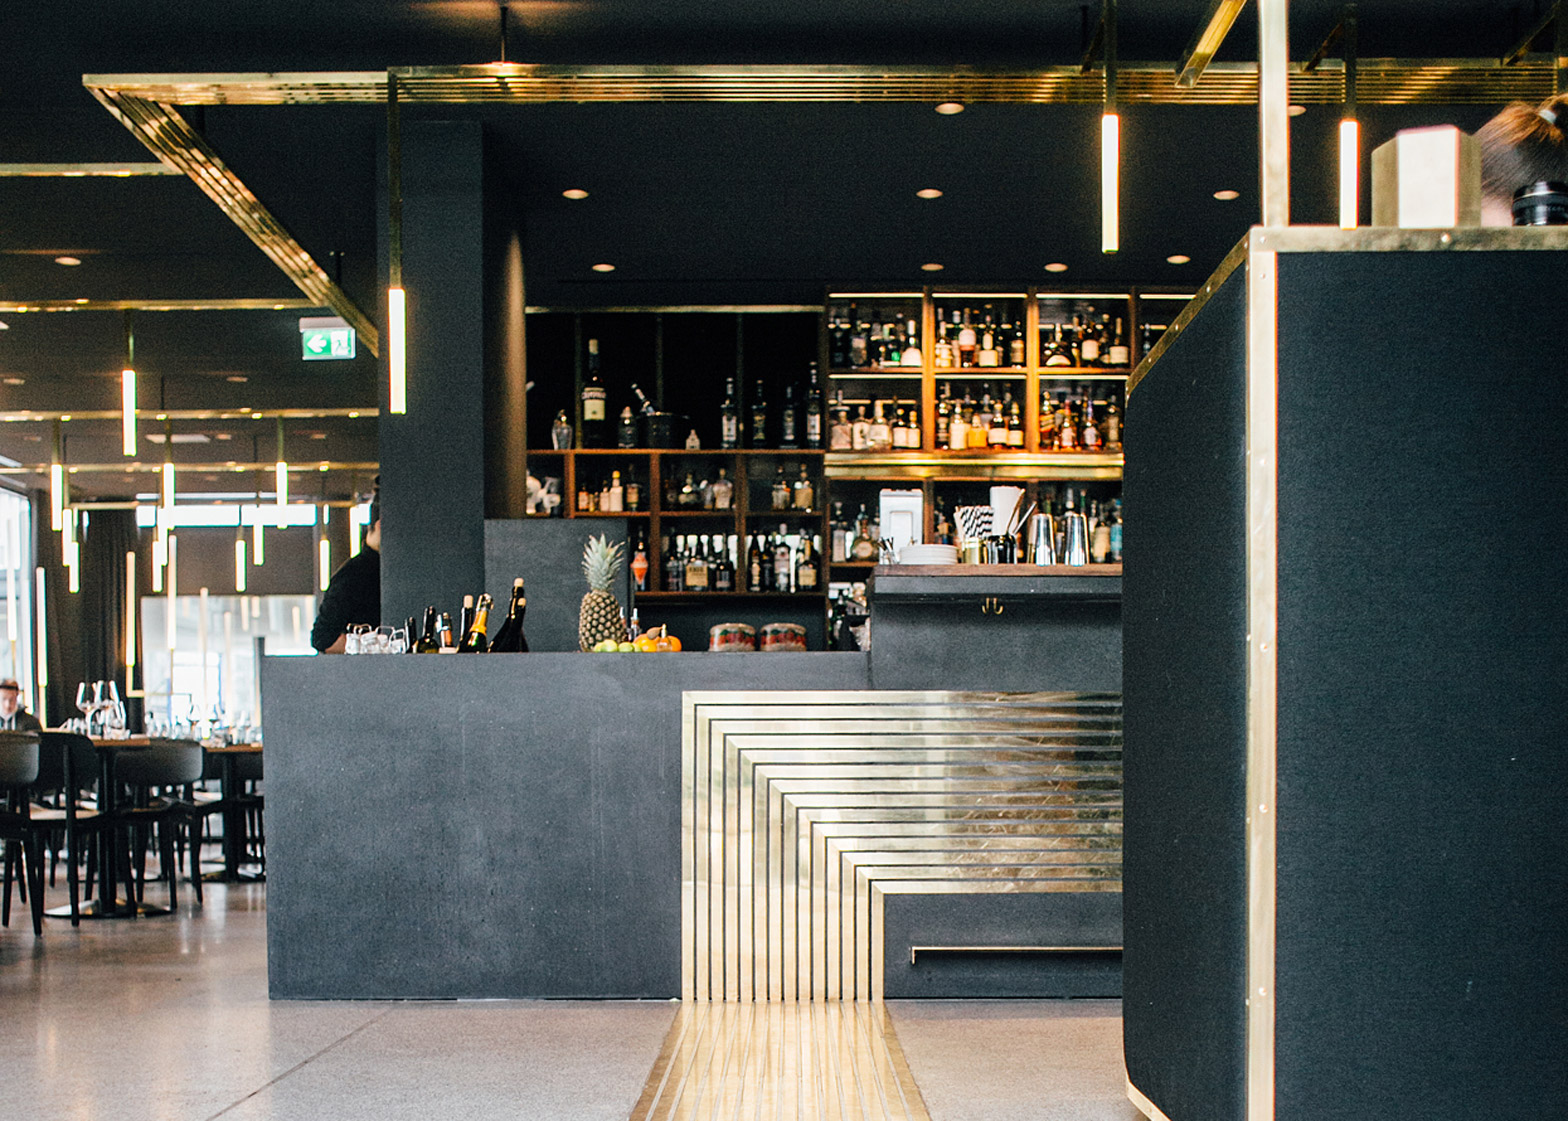 Build Architects adds brass "veins" bar interior